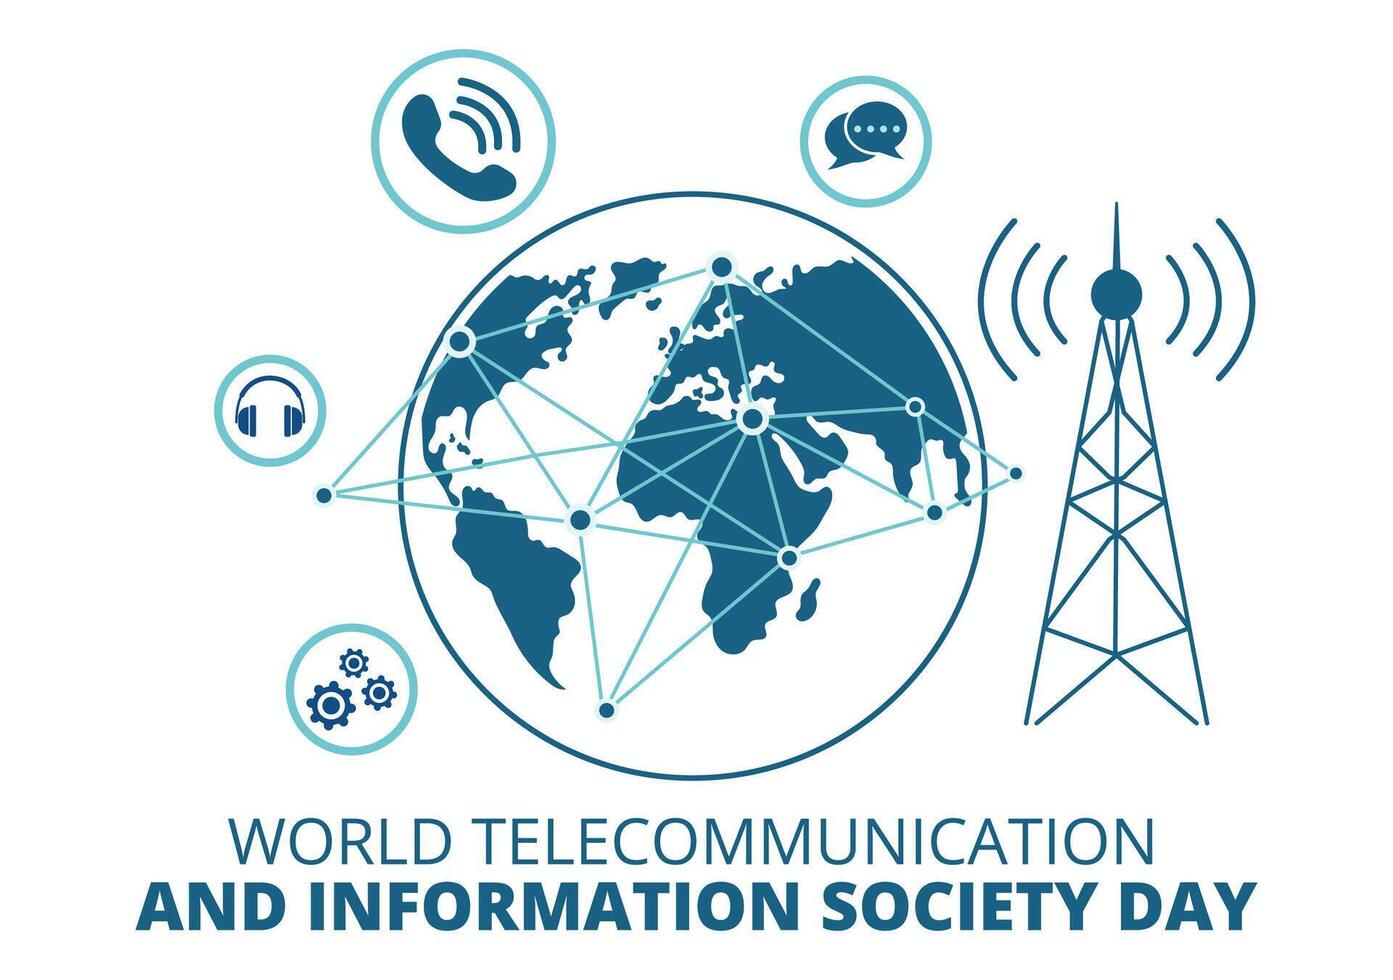 mundo telecomunicación y información sociedad día vector ilustración en mayo 17 con comunicaciones red a través de tierra globo en plano antecedentes